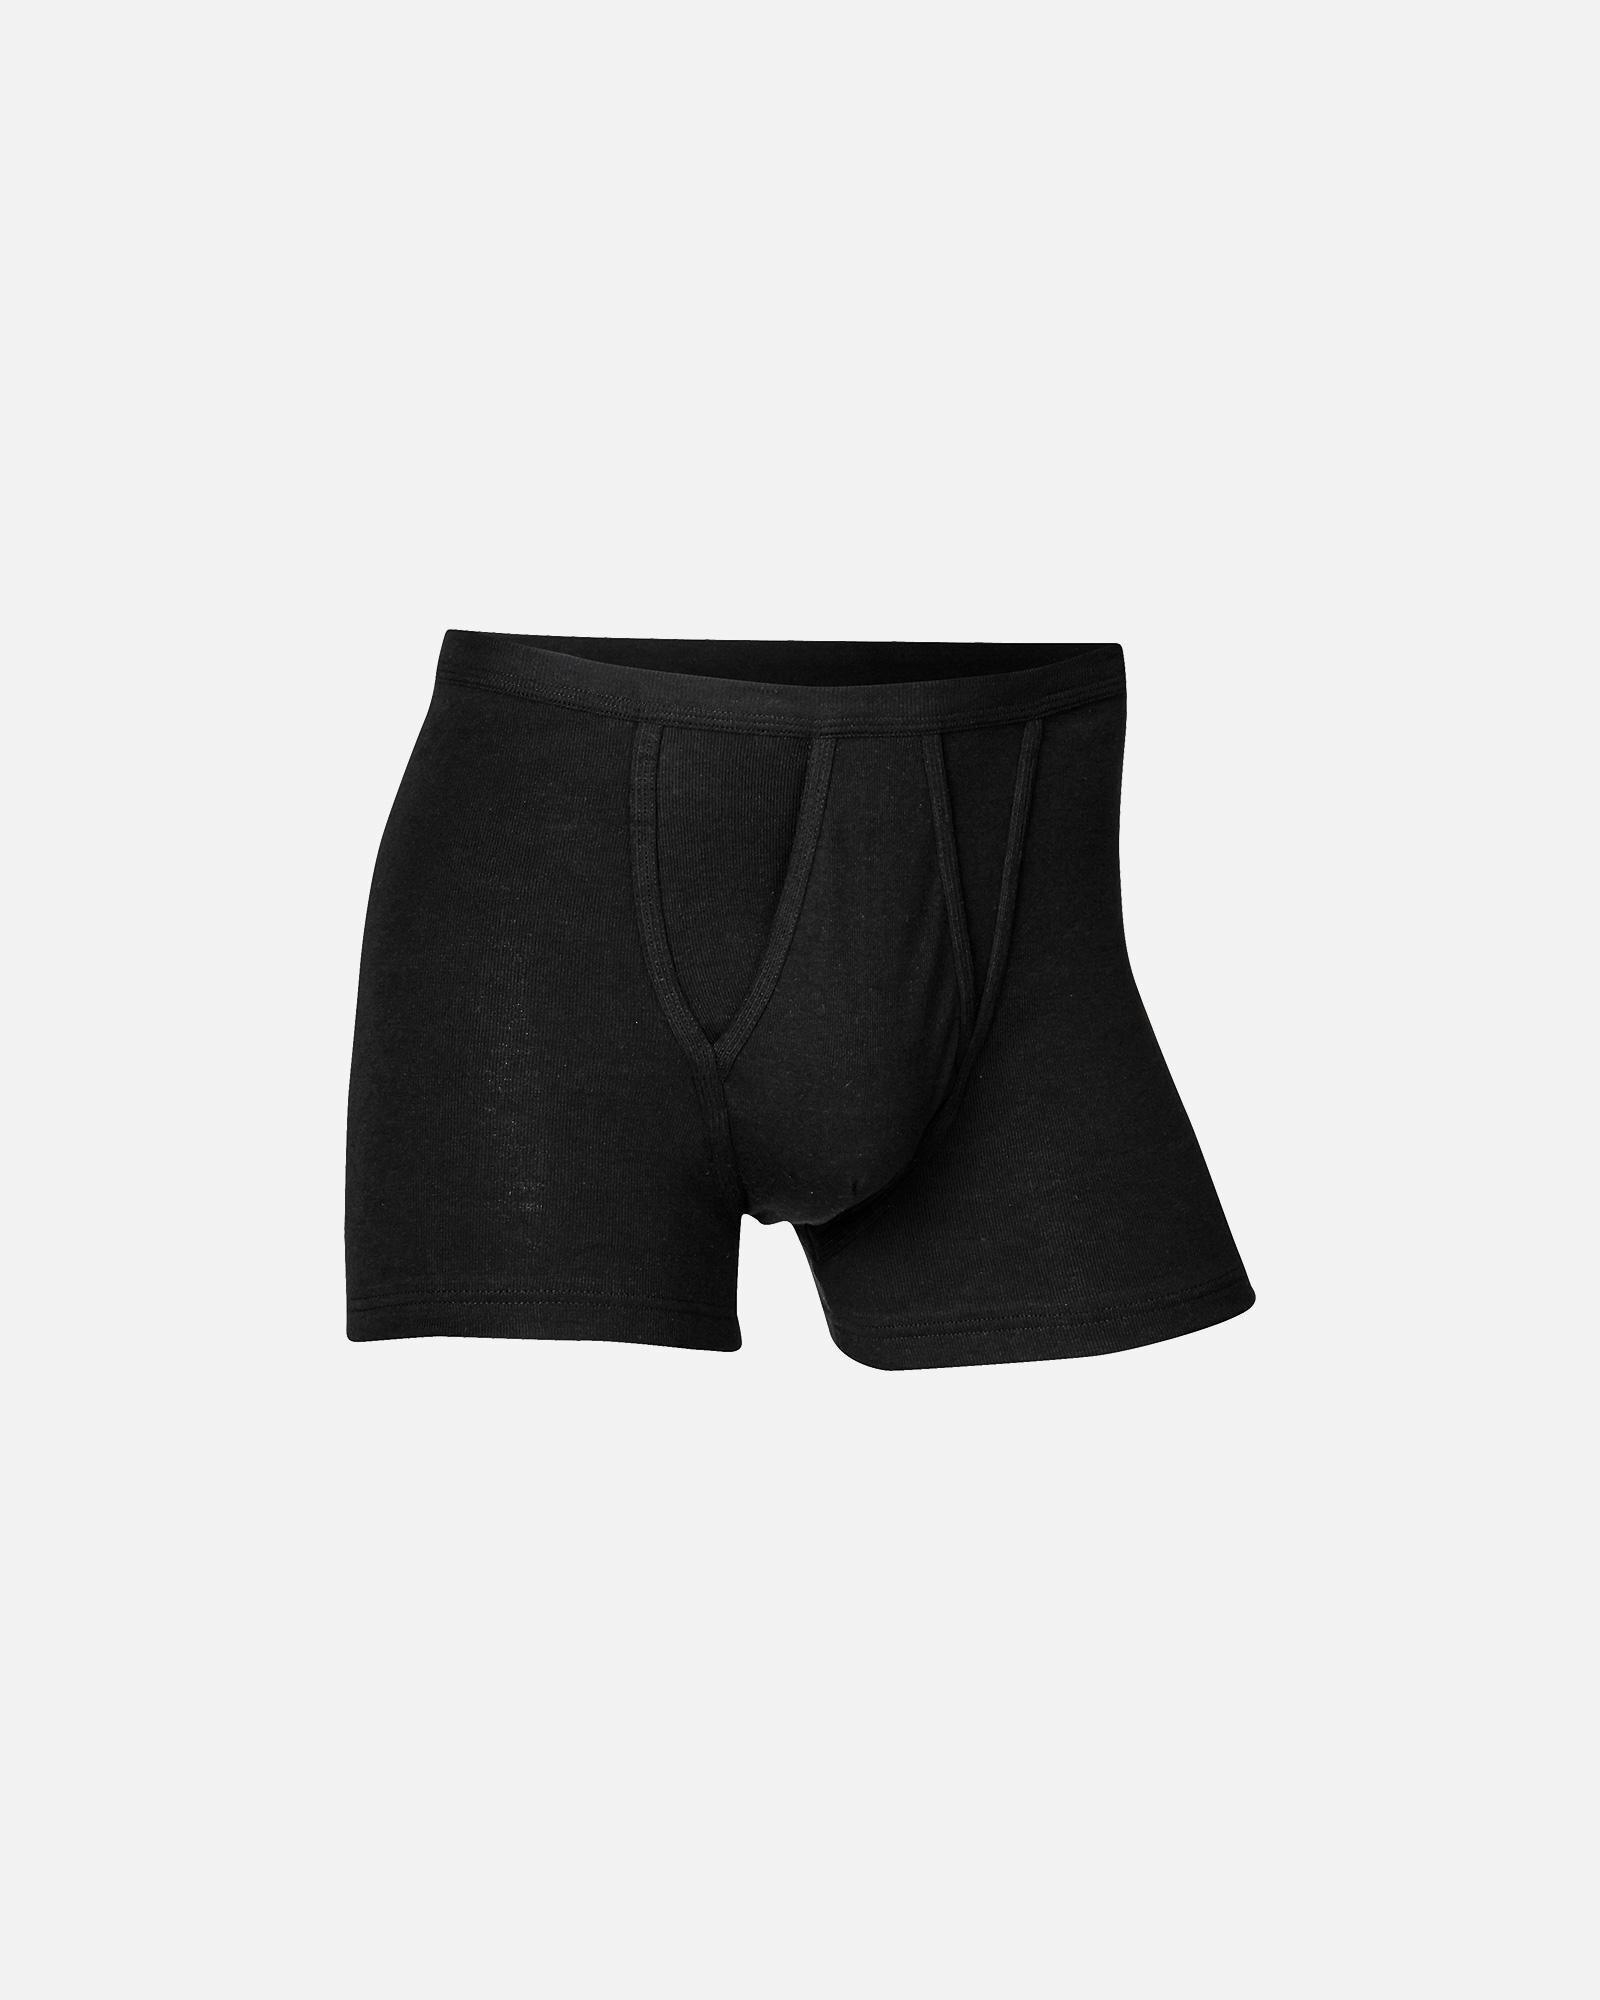 Original tights med gylp | 100% bomuld | sort - JBS officiel shop